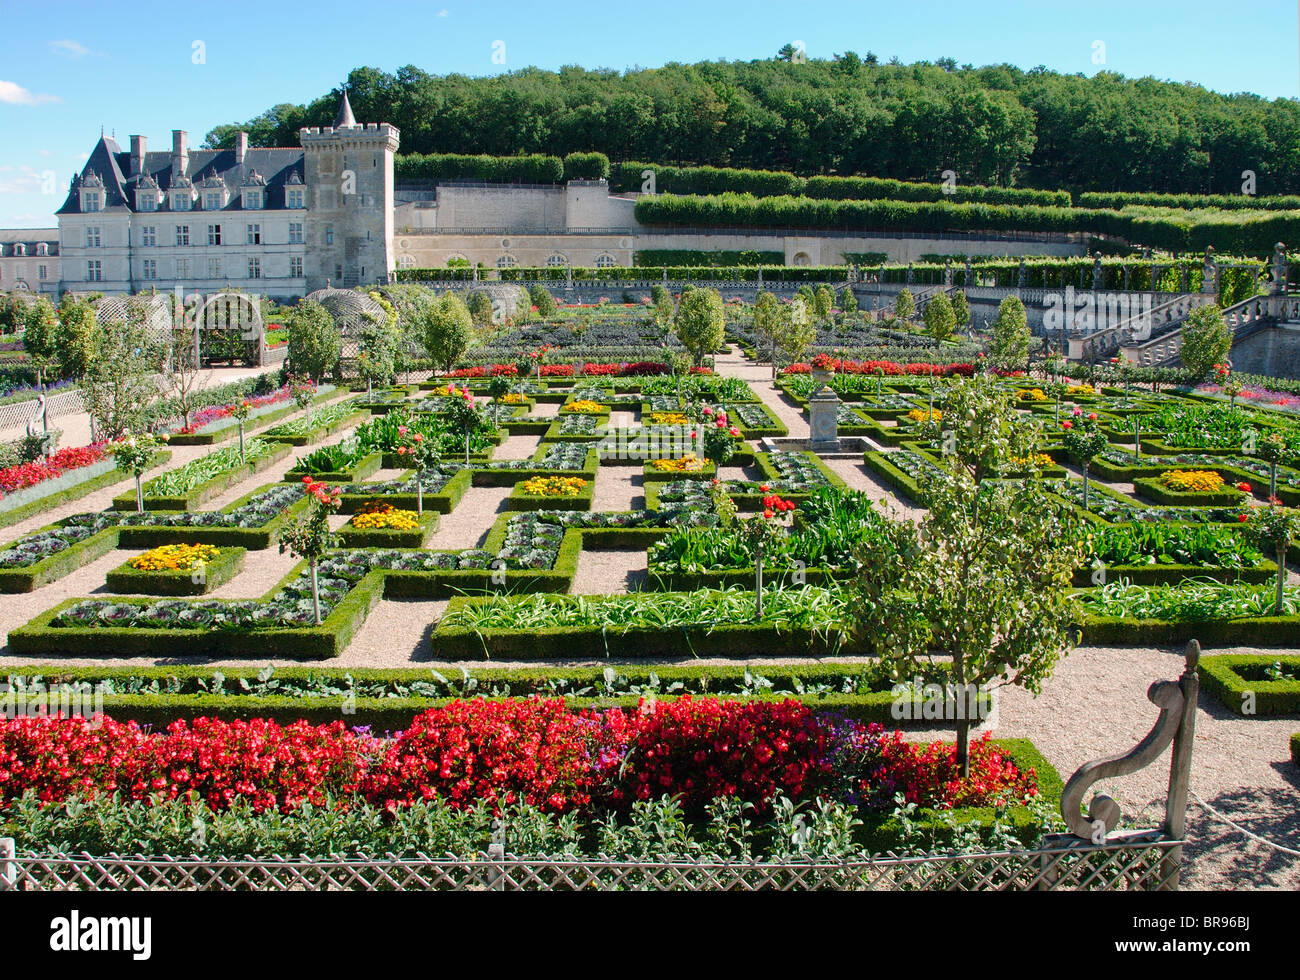 The grounds of the Chateau de Villandry, Indre et Loire, France Stock Photo